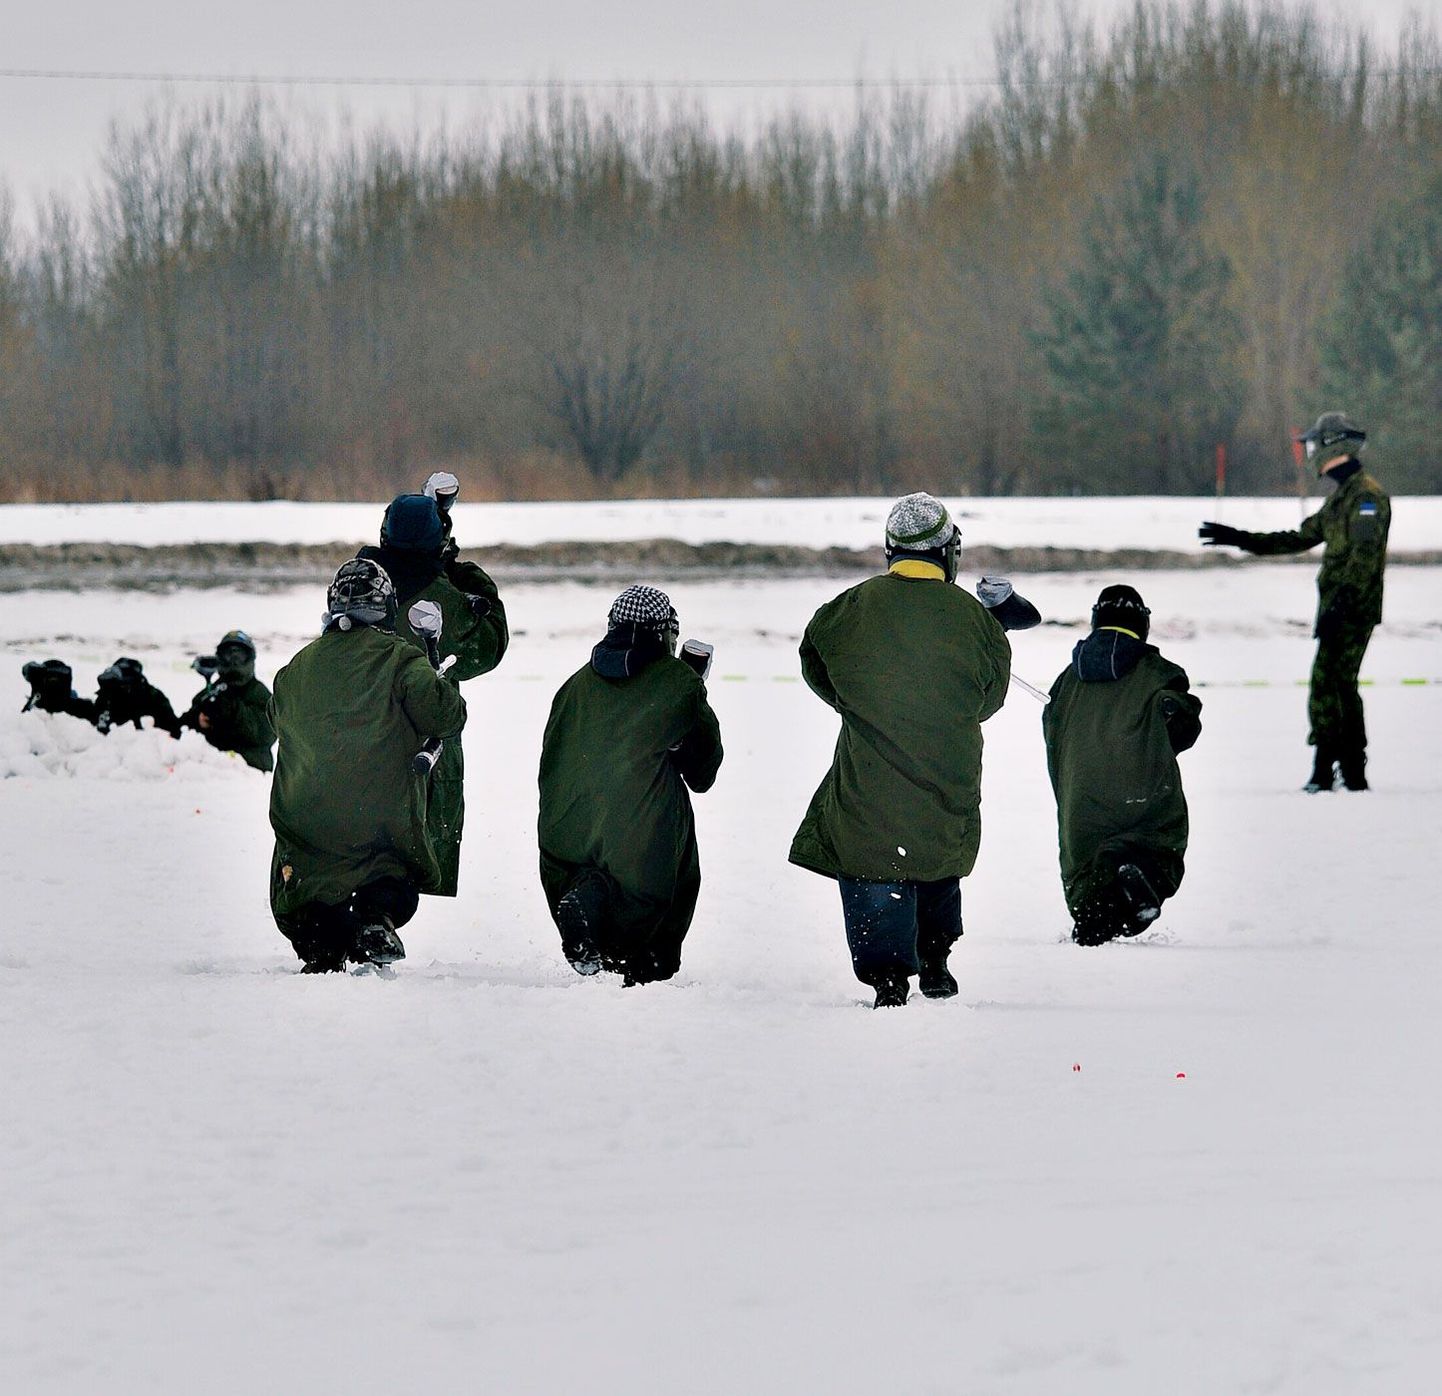 Samblarohelised ürbid ei aidanud pisikestel sõduritel küll lumel varjuda, kuid see-eest kaitsesid need väga hästi mängusõdurite enda riideid värvitabamuste eest.